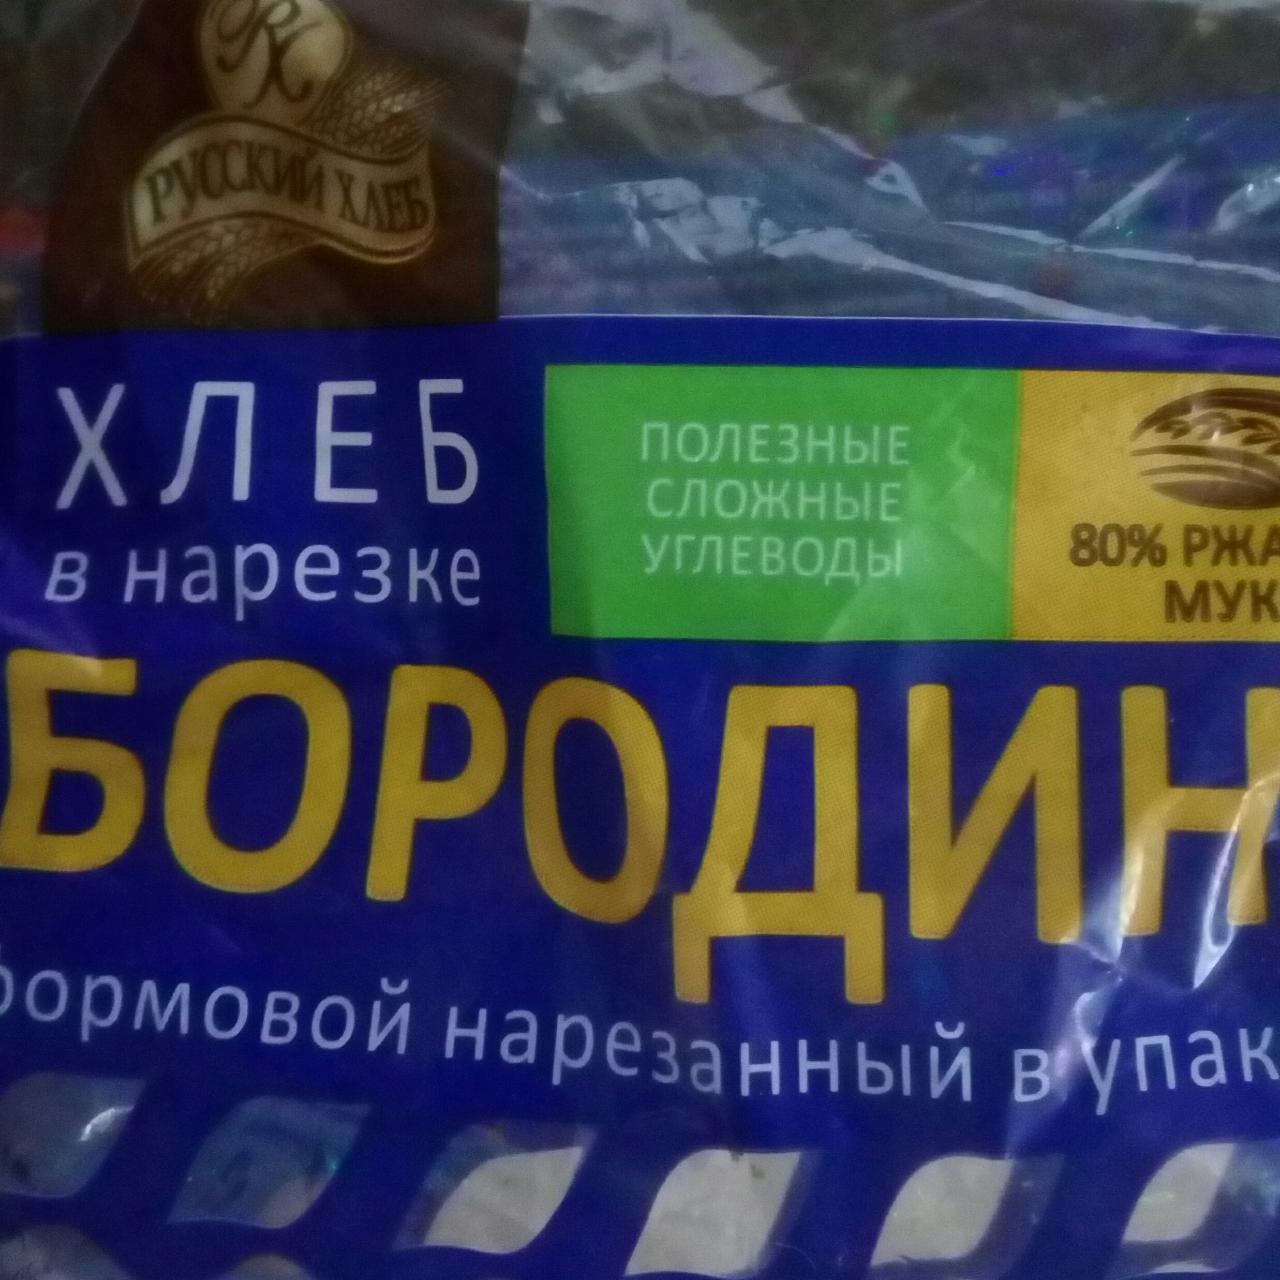 Фото - хлеб бородинский улучшенный в нарезке Русский хлеб